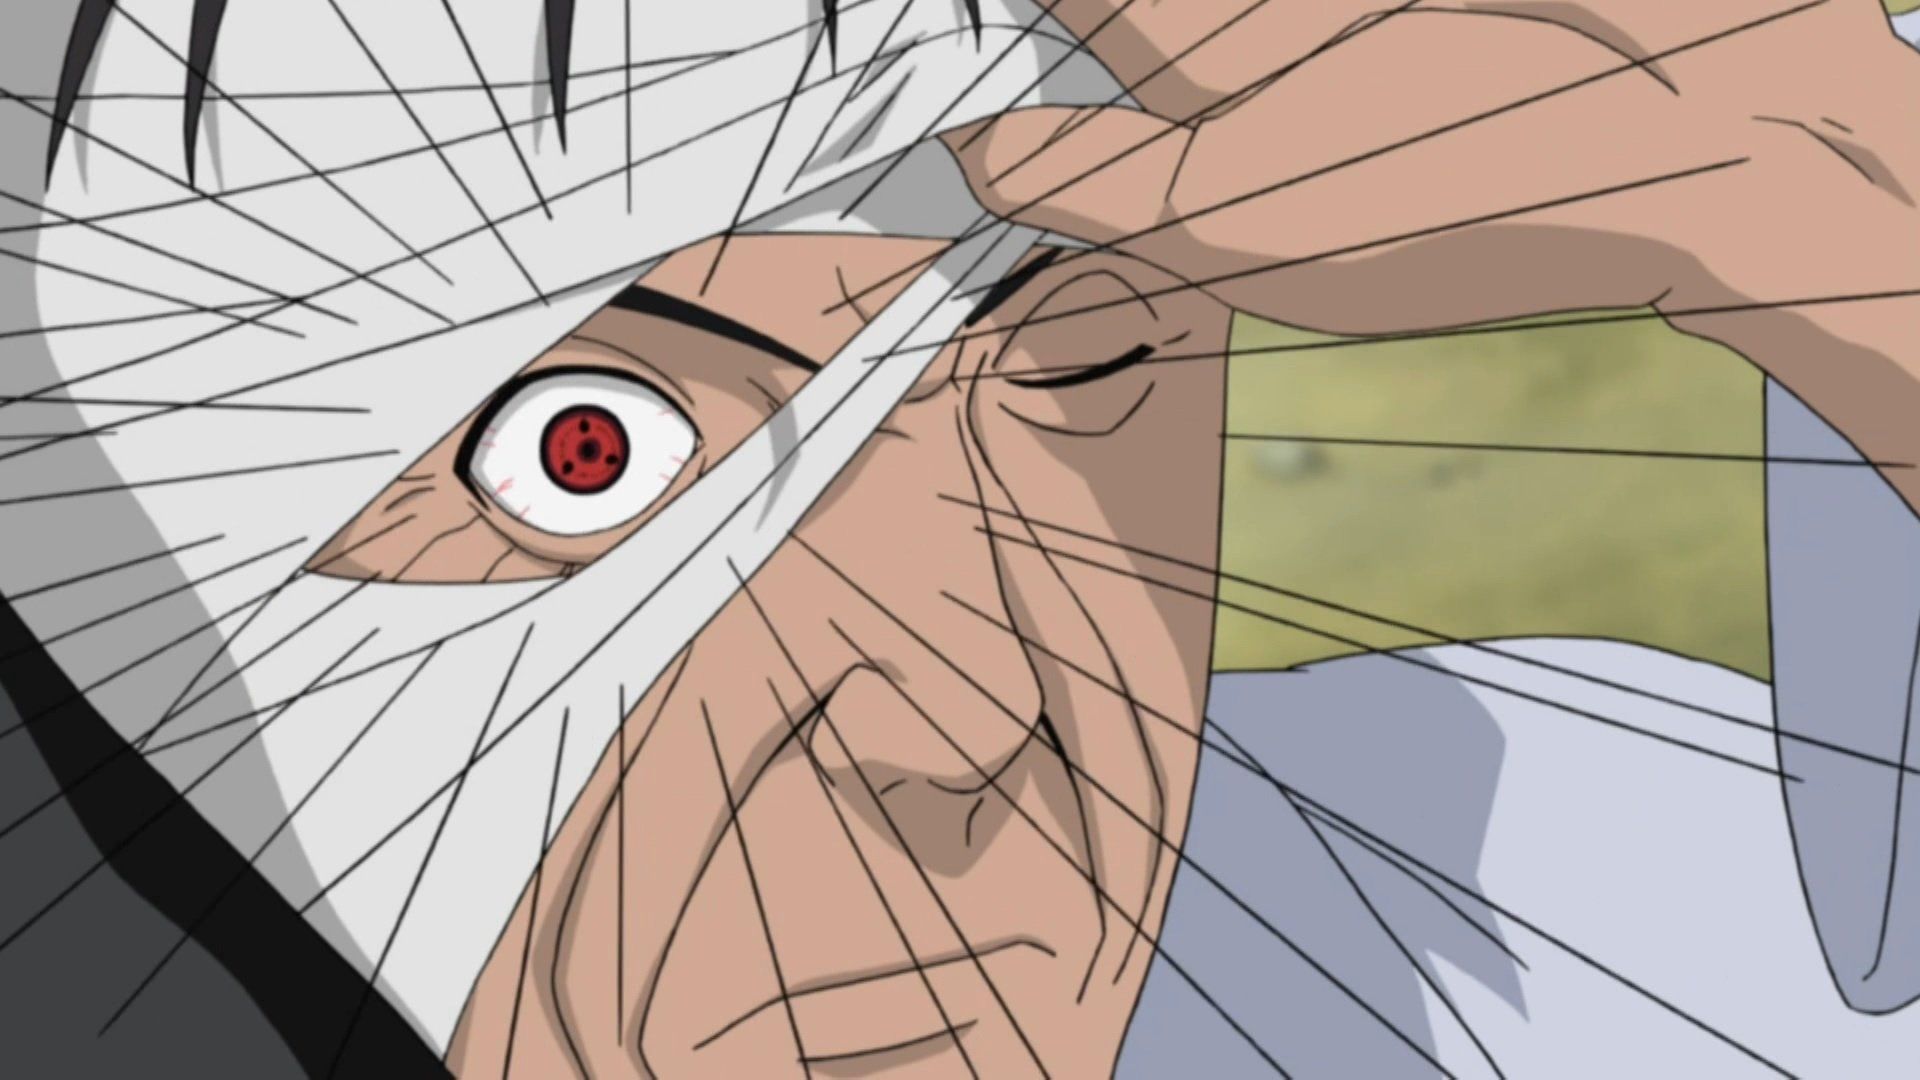 Por que Danzo não aproveitou a morte do Terceiro Hokage para liderar Konoha  em Naruto?